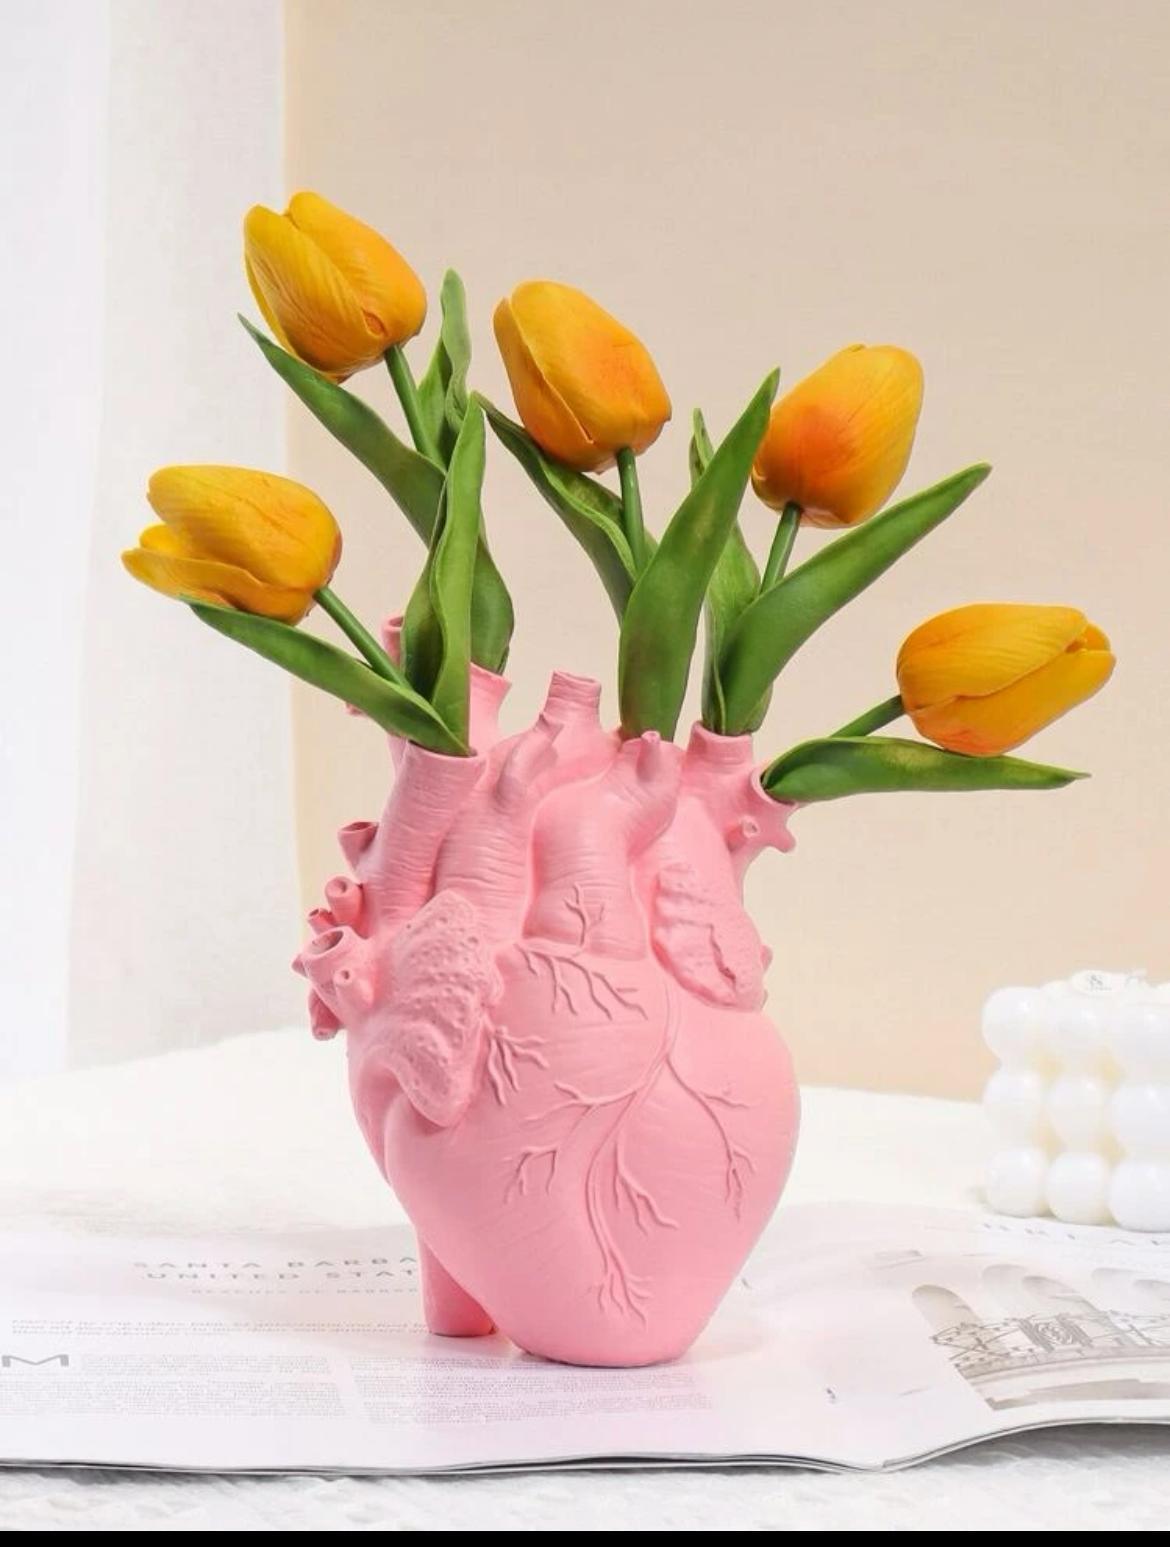 Cuore in poliresina - vaso per fiore ad organo di cuore - preordine 7 giorni - Jiumir